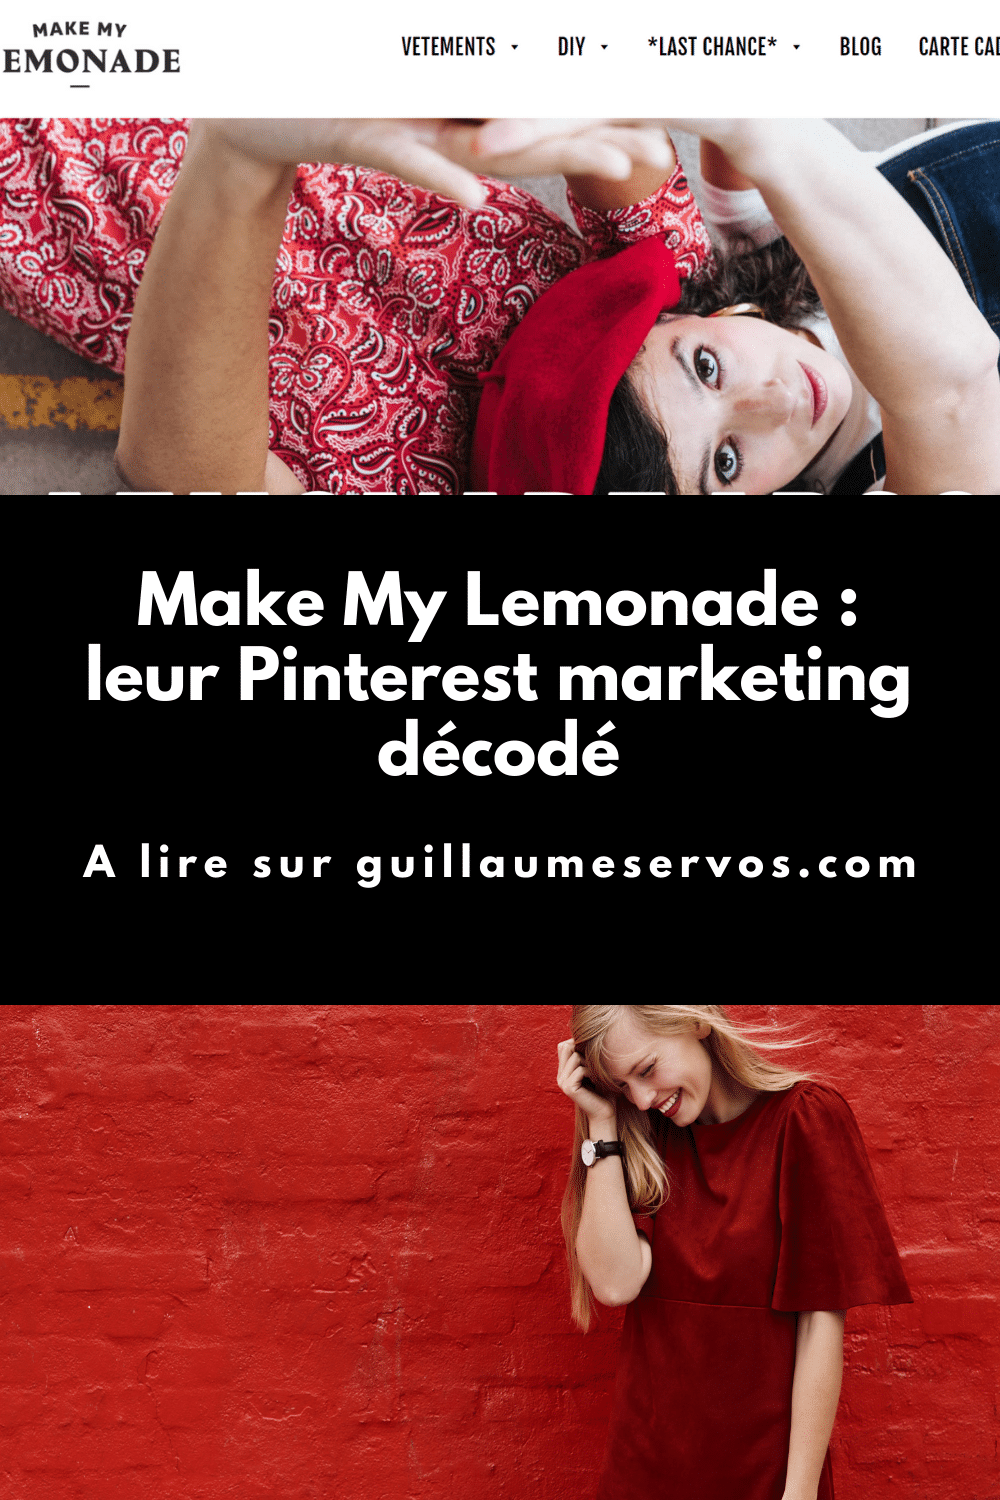 Comment Make My Lemonade utilise Pinterest pour son business ? Je décode le Pinterest marketing de le 1ère marque française prônant le Do It Yourself.